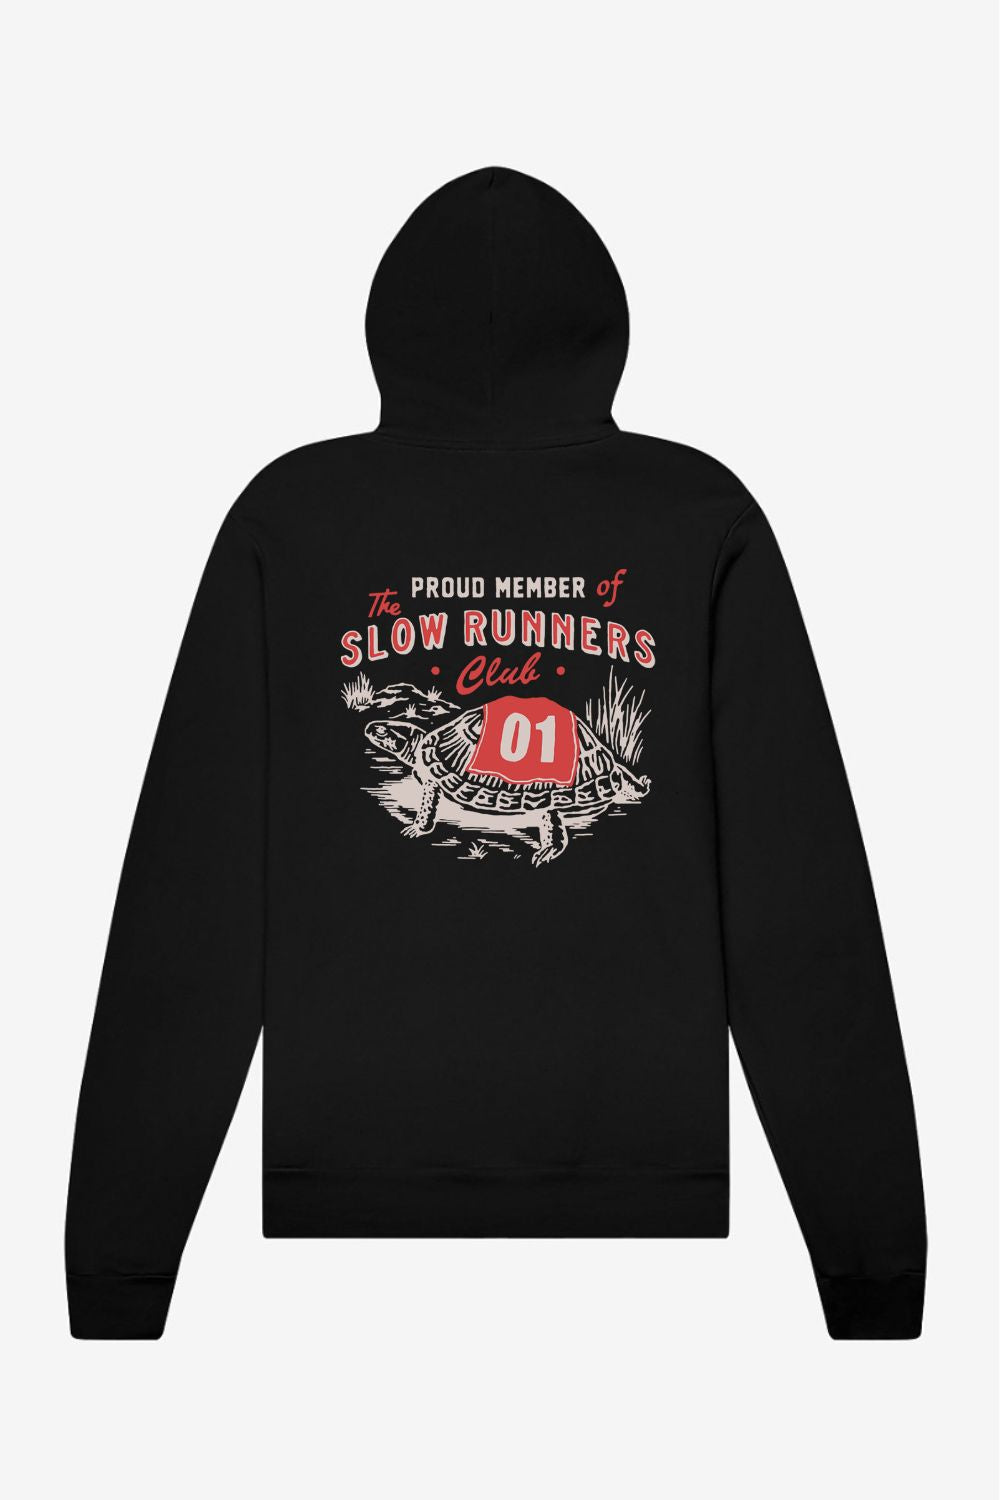 Slow Runners Club Hoodie Sweatshirt